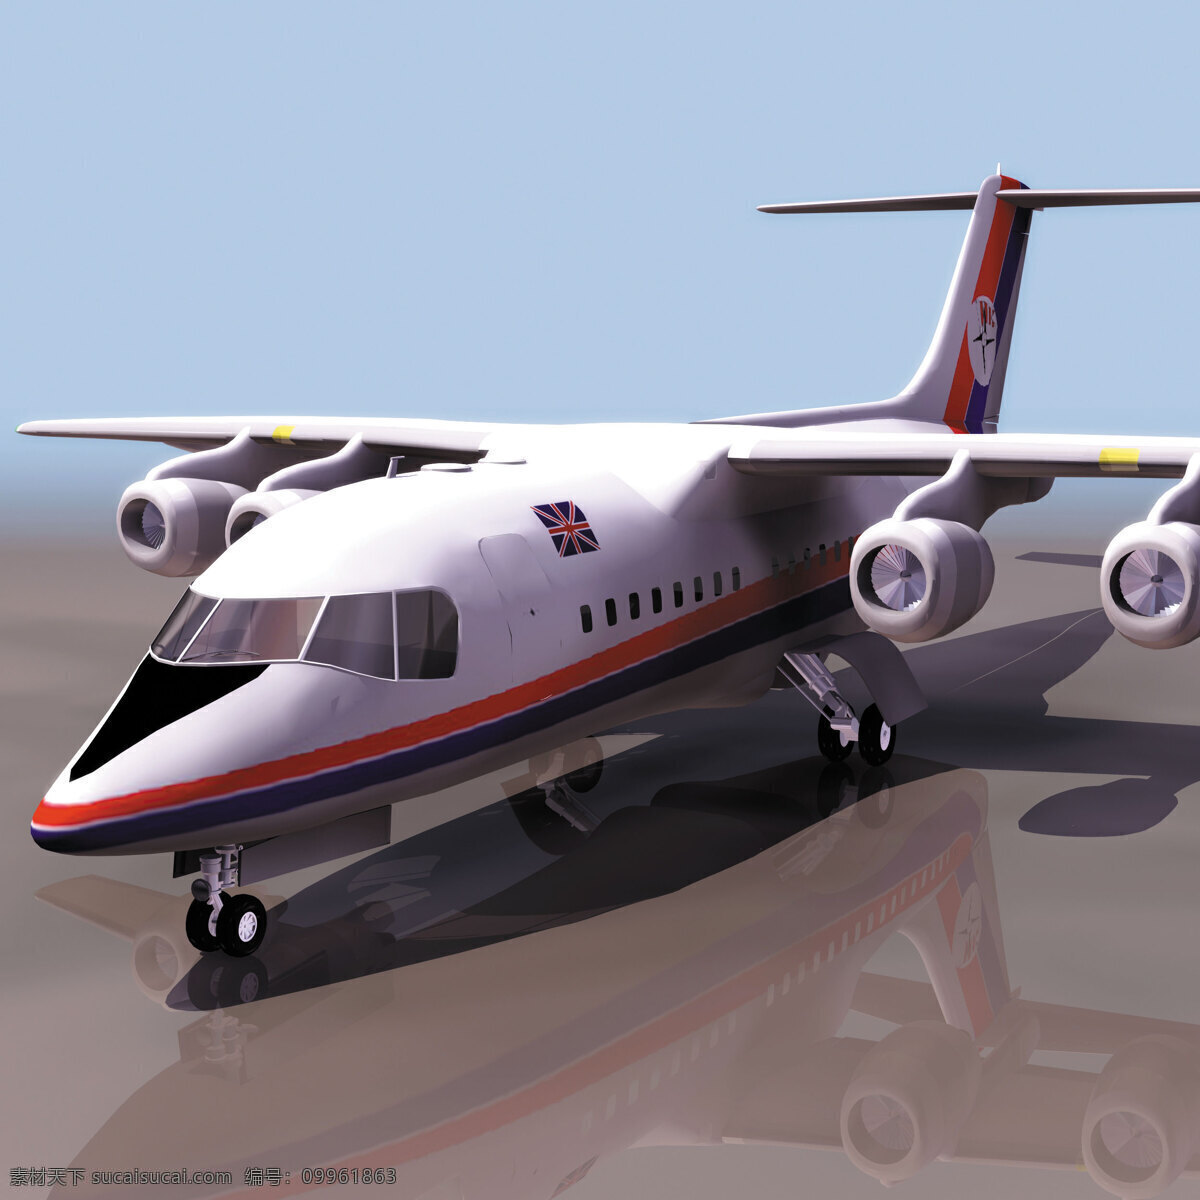 普通 飞机模型 飞机素材 普通飞机模型 3dmx 3d模型素材 其他3d模型